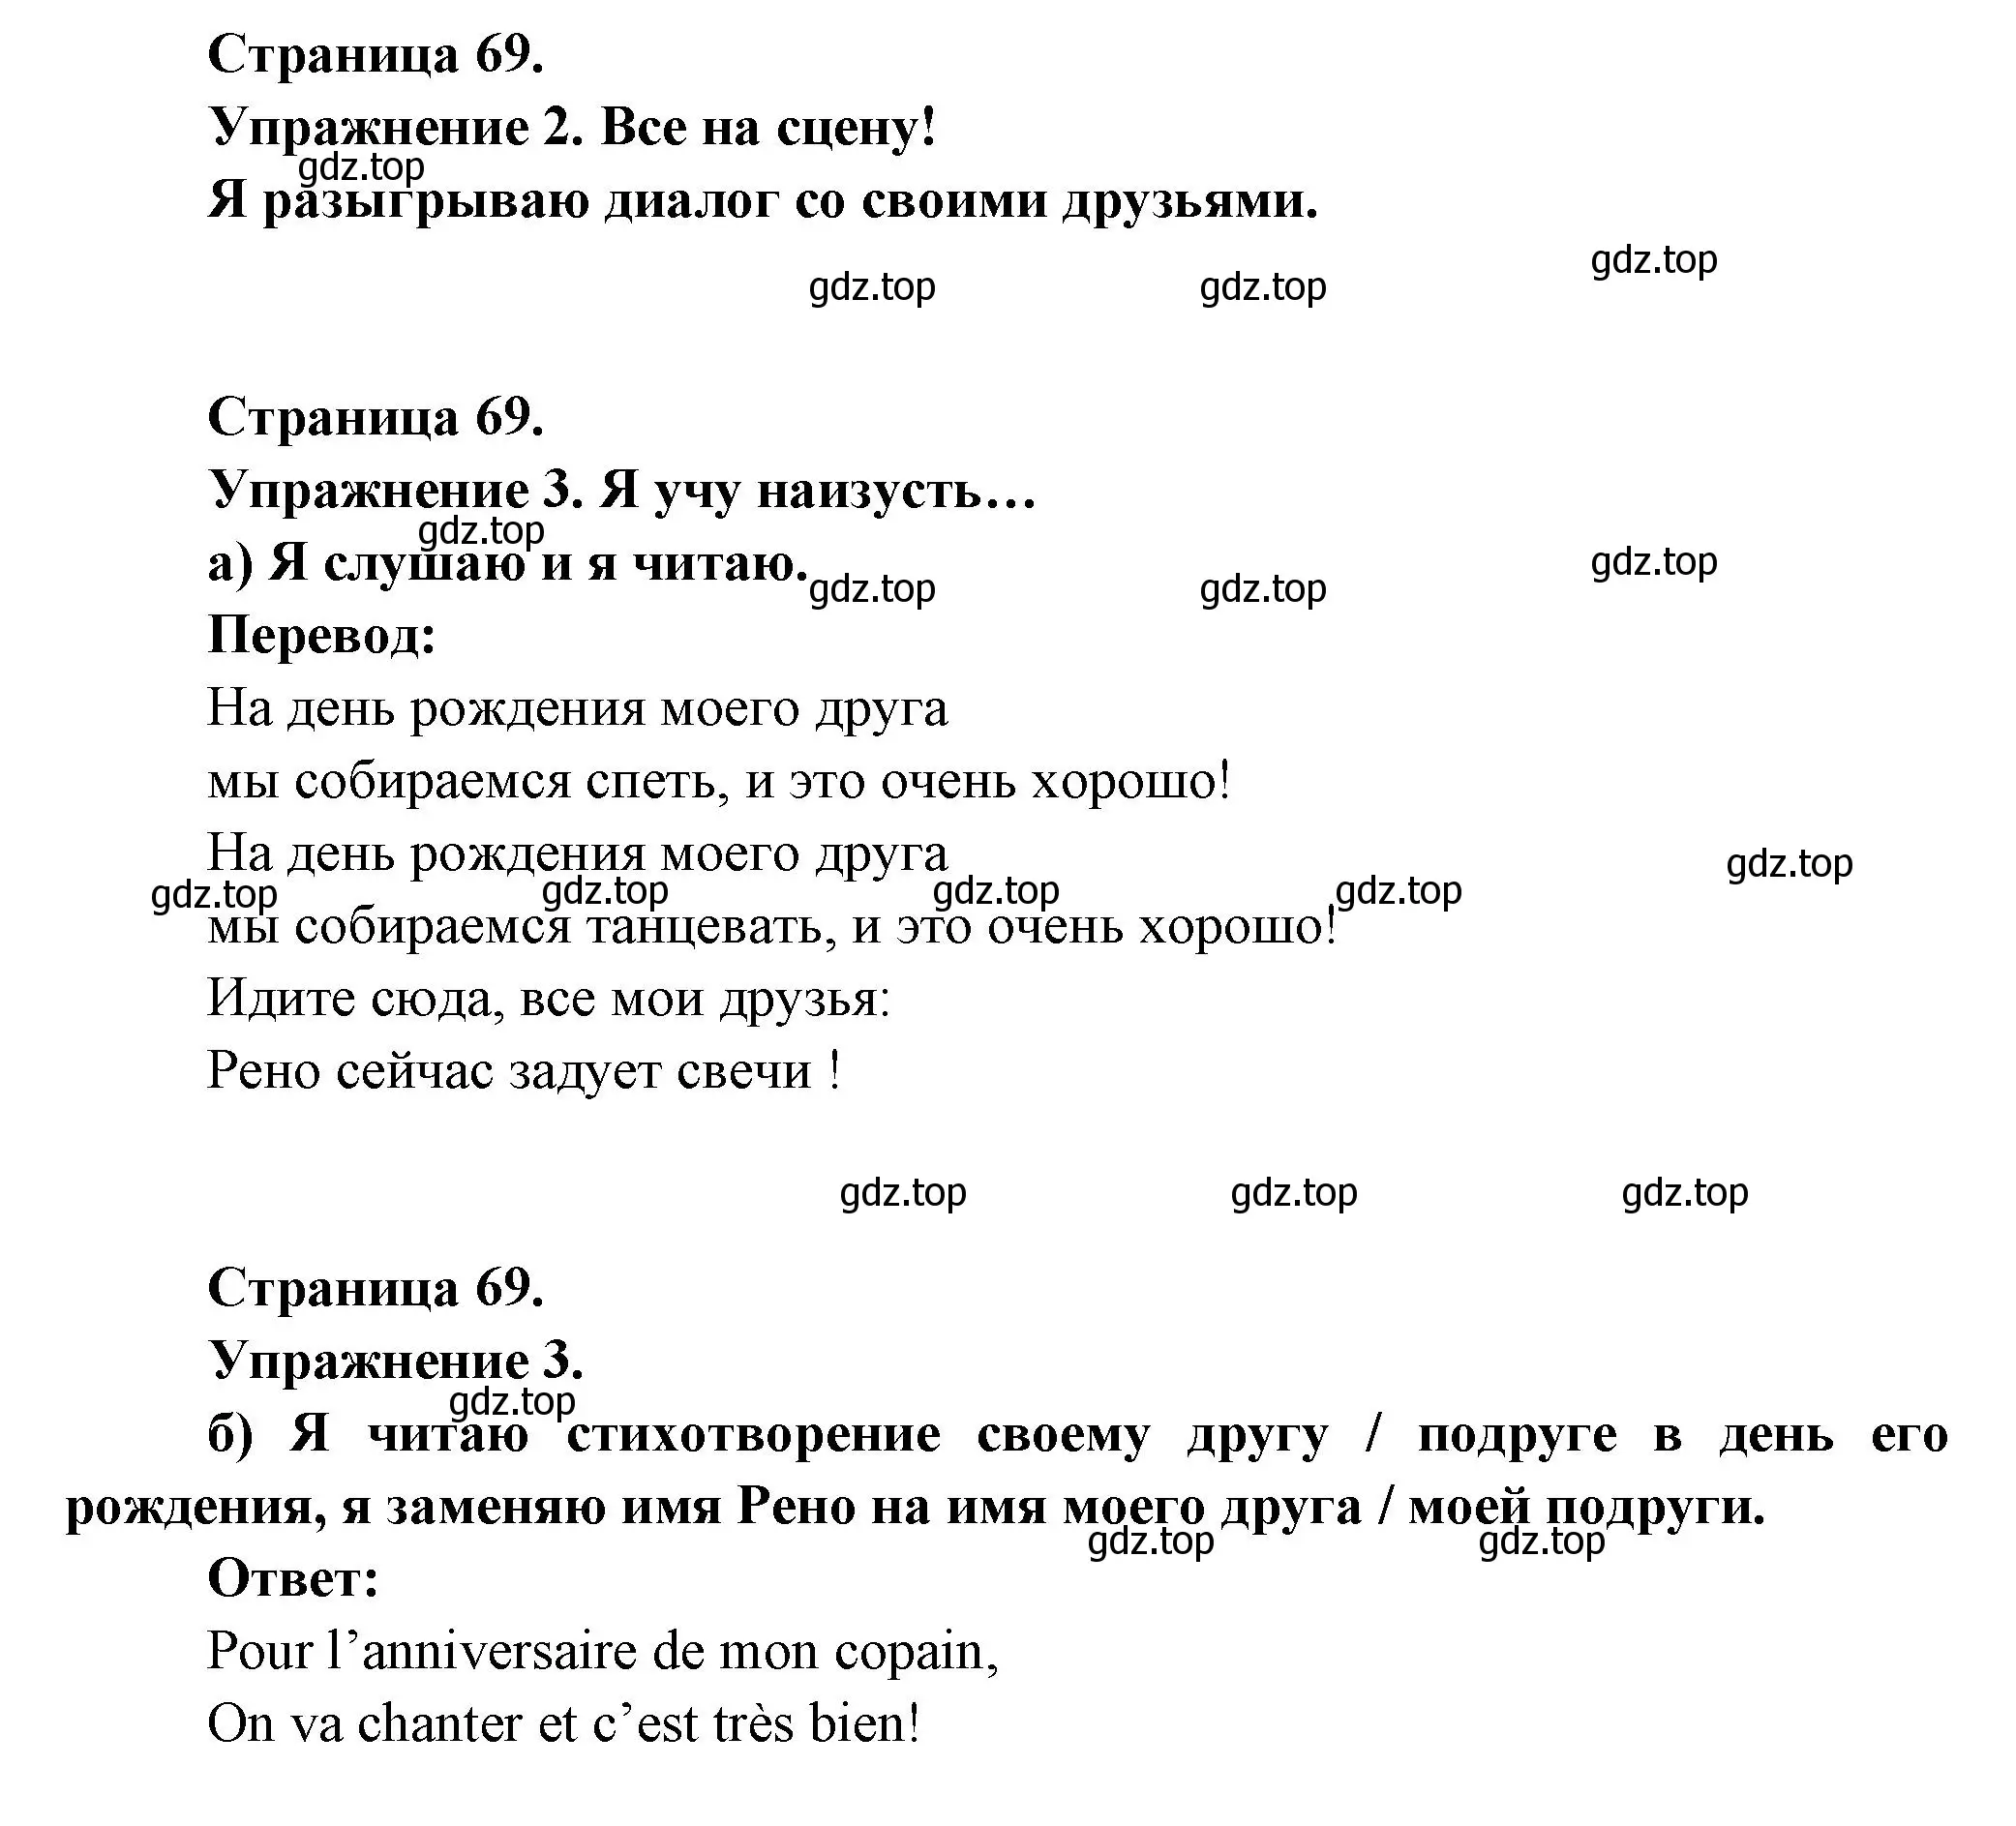 Решение  69 (страница 69) гдз по французскому языку 3 класс Кулигин, Кирьянова, учебник 1 часть